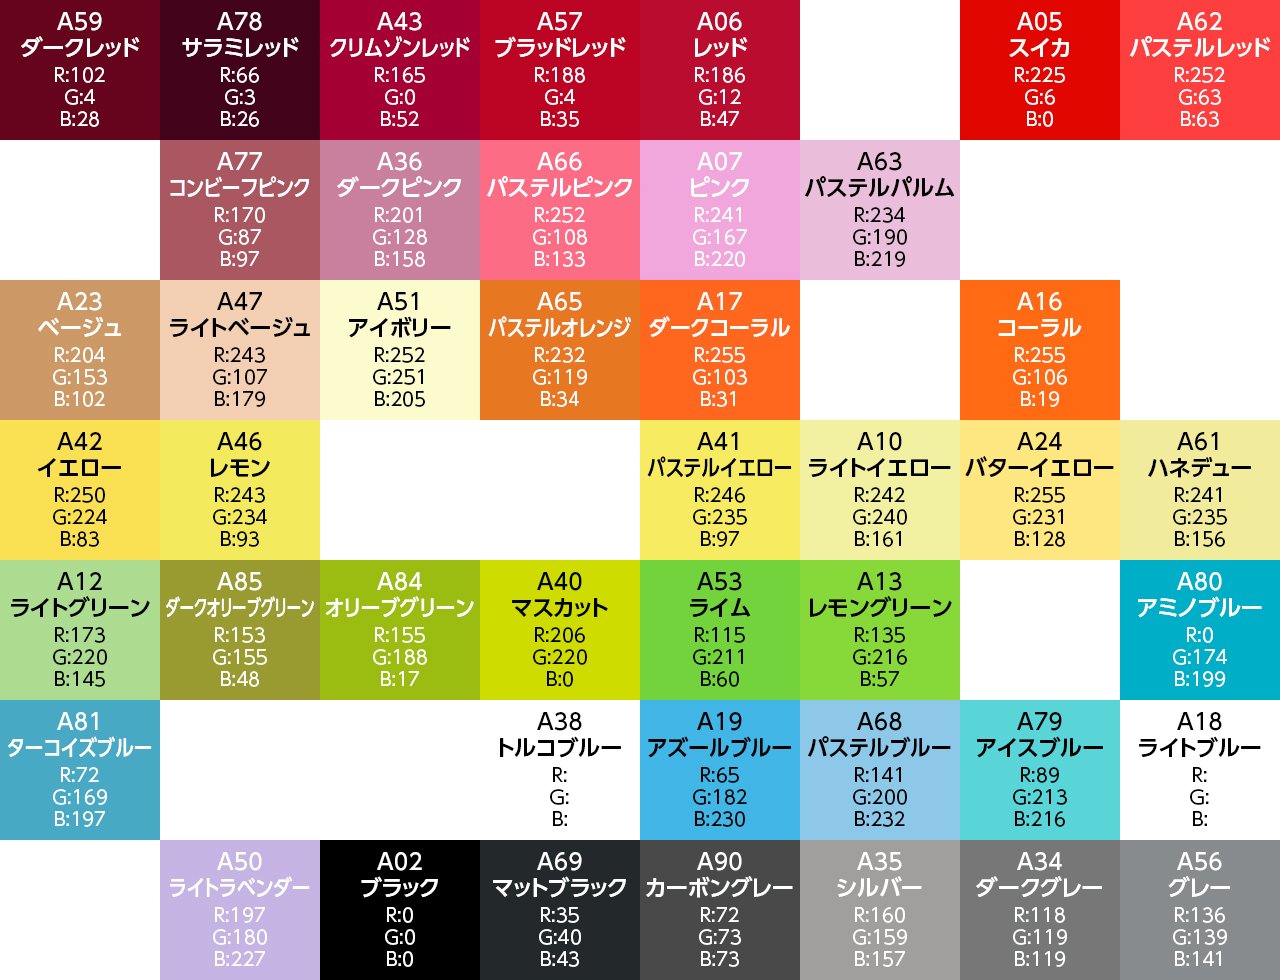 へびぃ Twitterissä: "ミニフューズビーズの製造元であるARTKAL社のサイトにRGBカラーコード付きの色見本（通常色のみ）がある